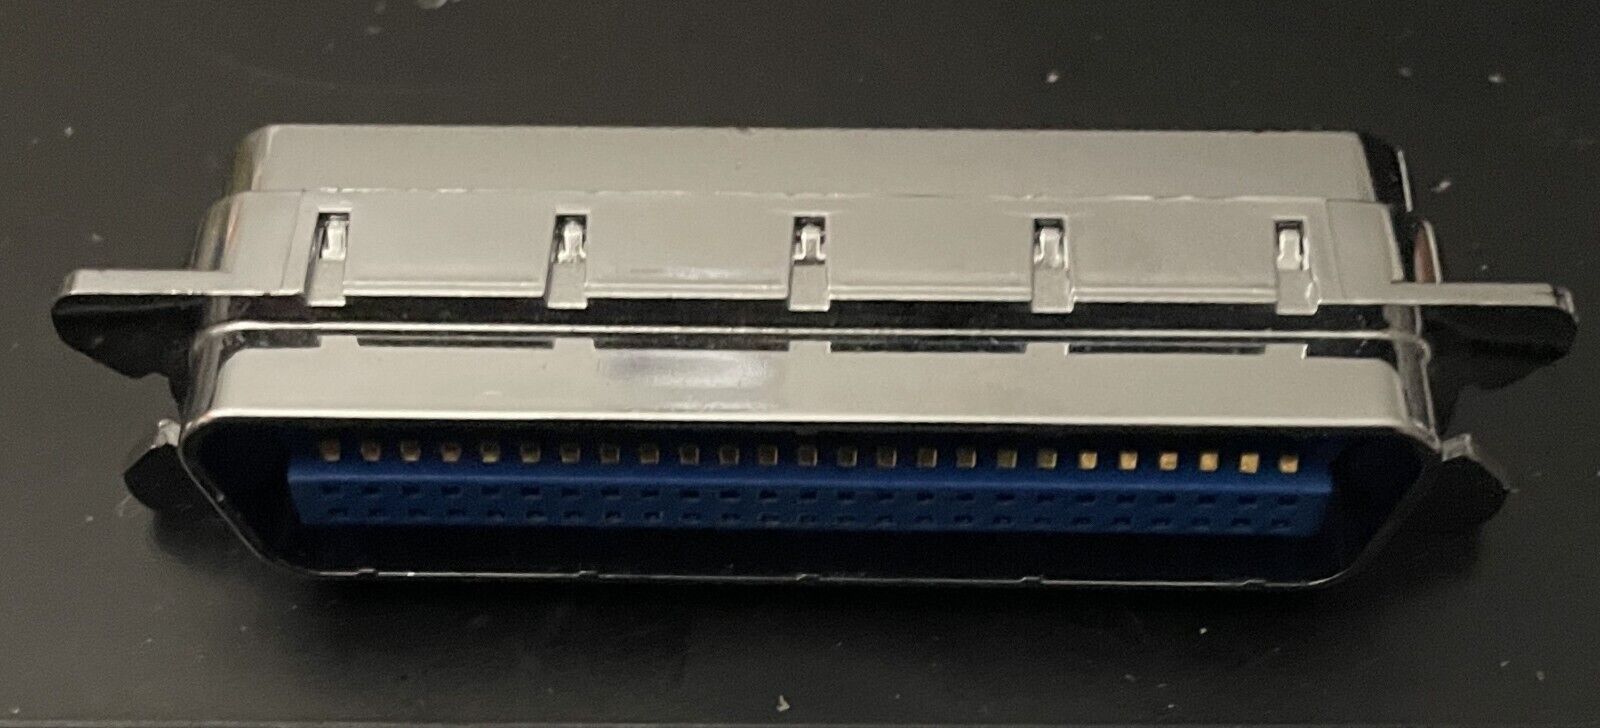 DataMate SCSI Serial Bus Terminator 50 Pin Male